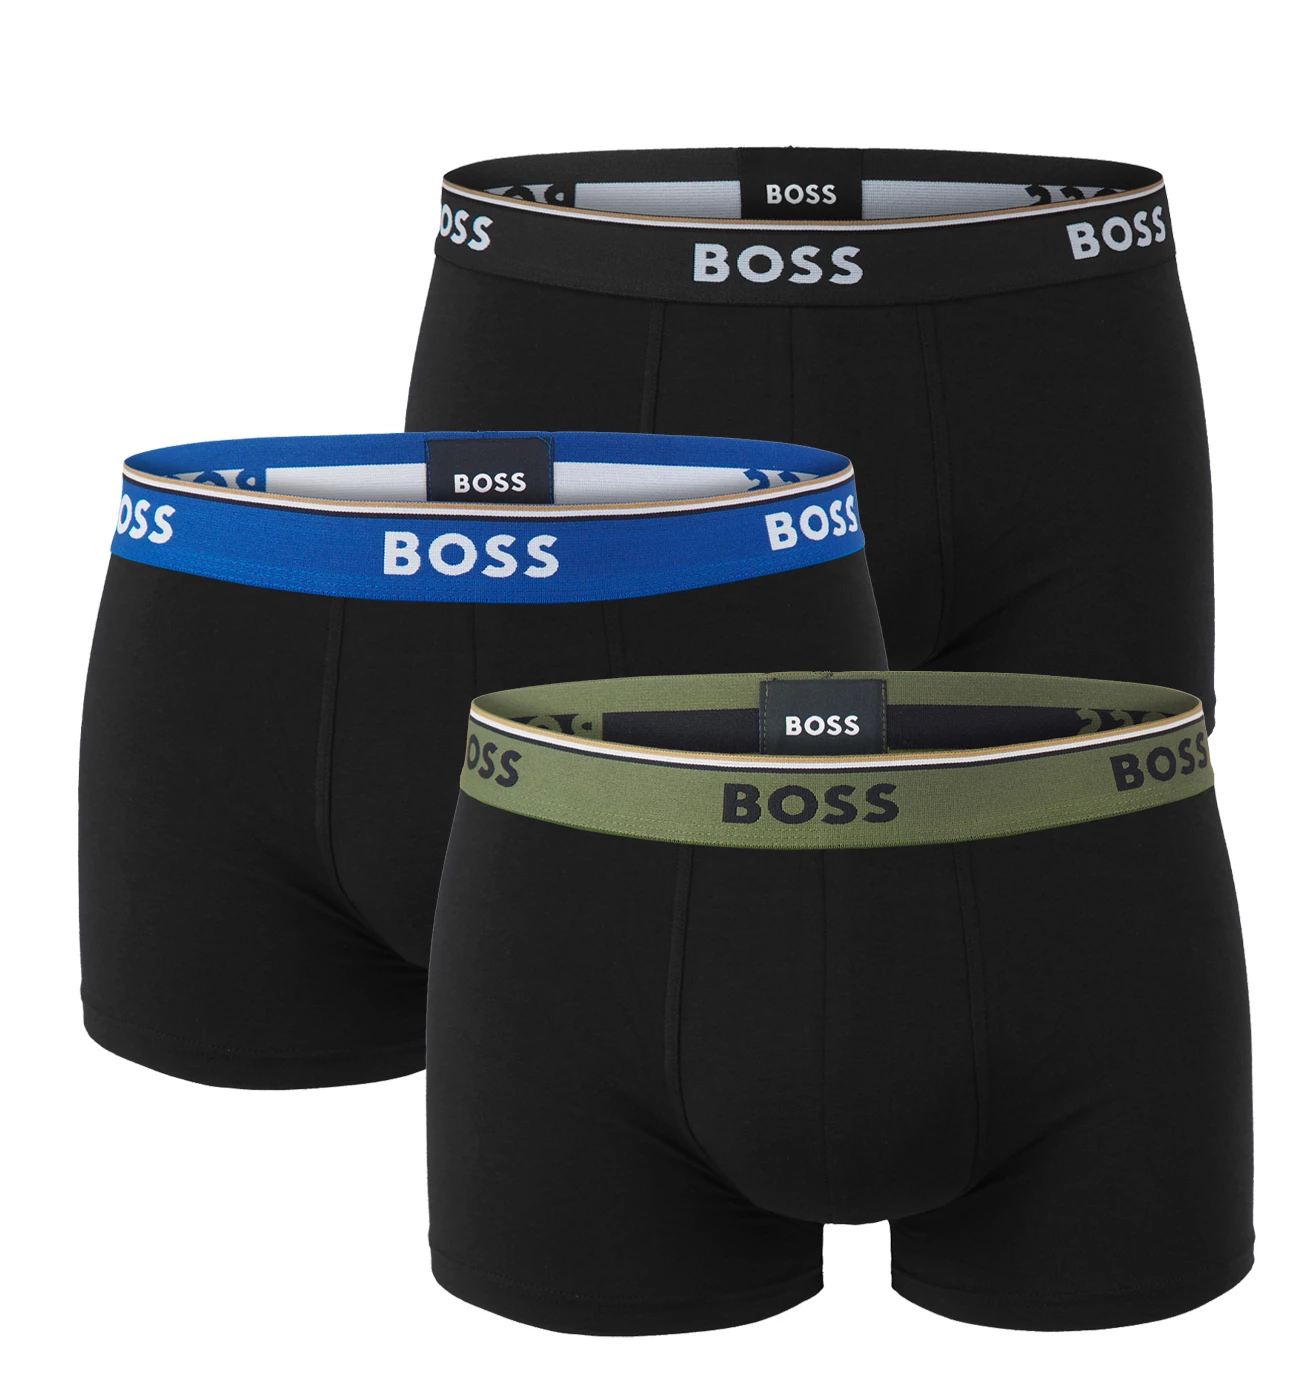 BOSS - boxerky 3PACK cotton stretch power black s army green pásom - limitovaná fashion edícia (HUGO BOSS)